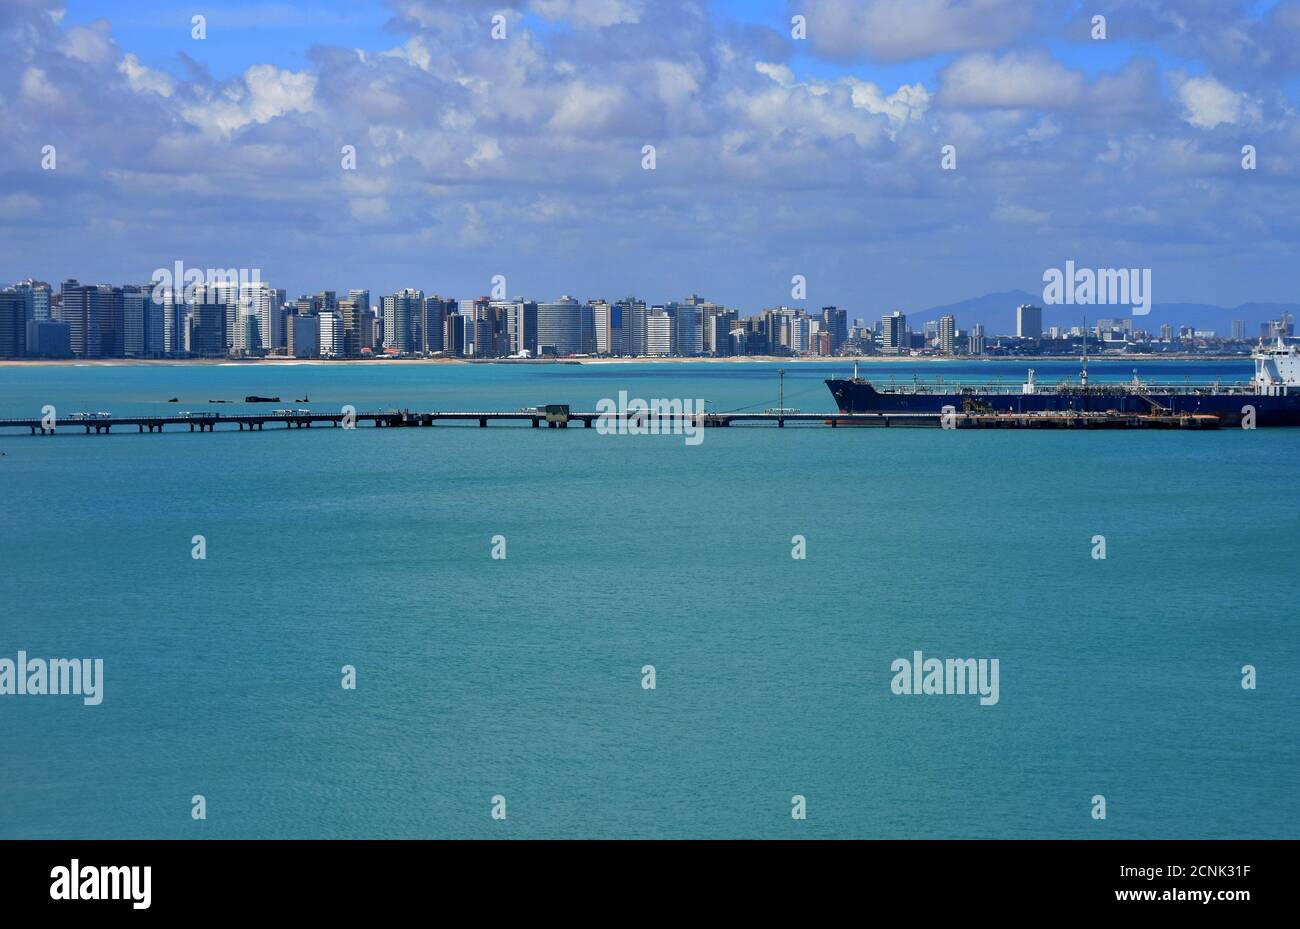 Stadtbild von Port Fortaleza in Brasilien während des Sommertages unter azurblauem Himmel mit Wolken und ruhiger Oberfläche des Atlantiks. Im Vordergrund blauer Tankwagen. Stockfoto